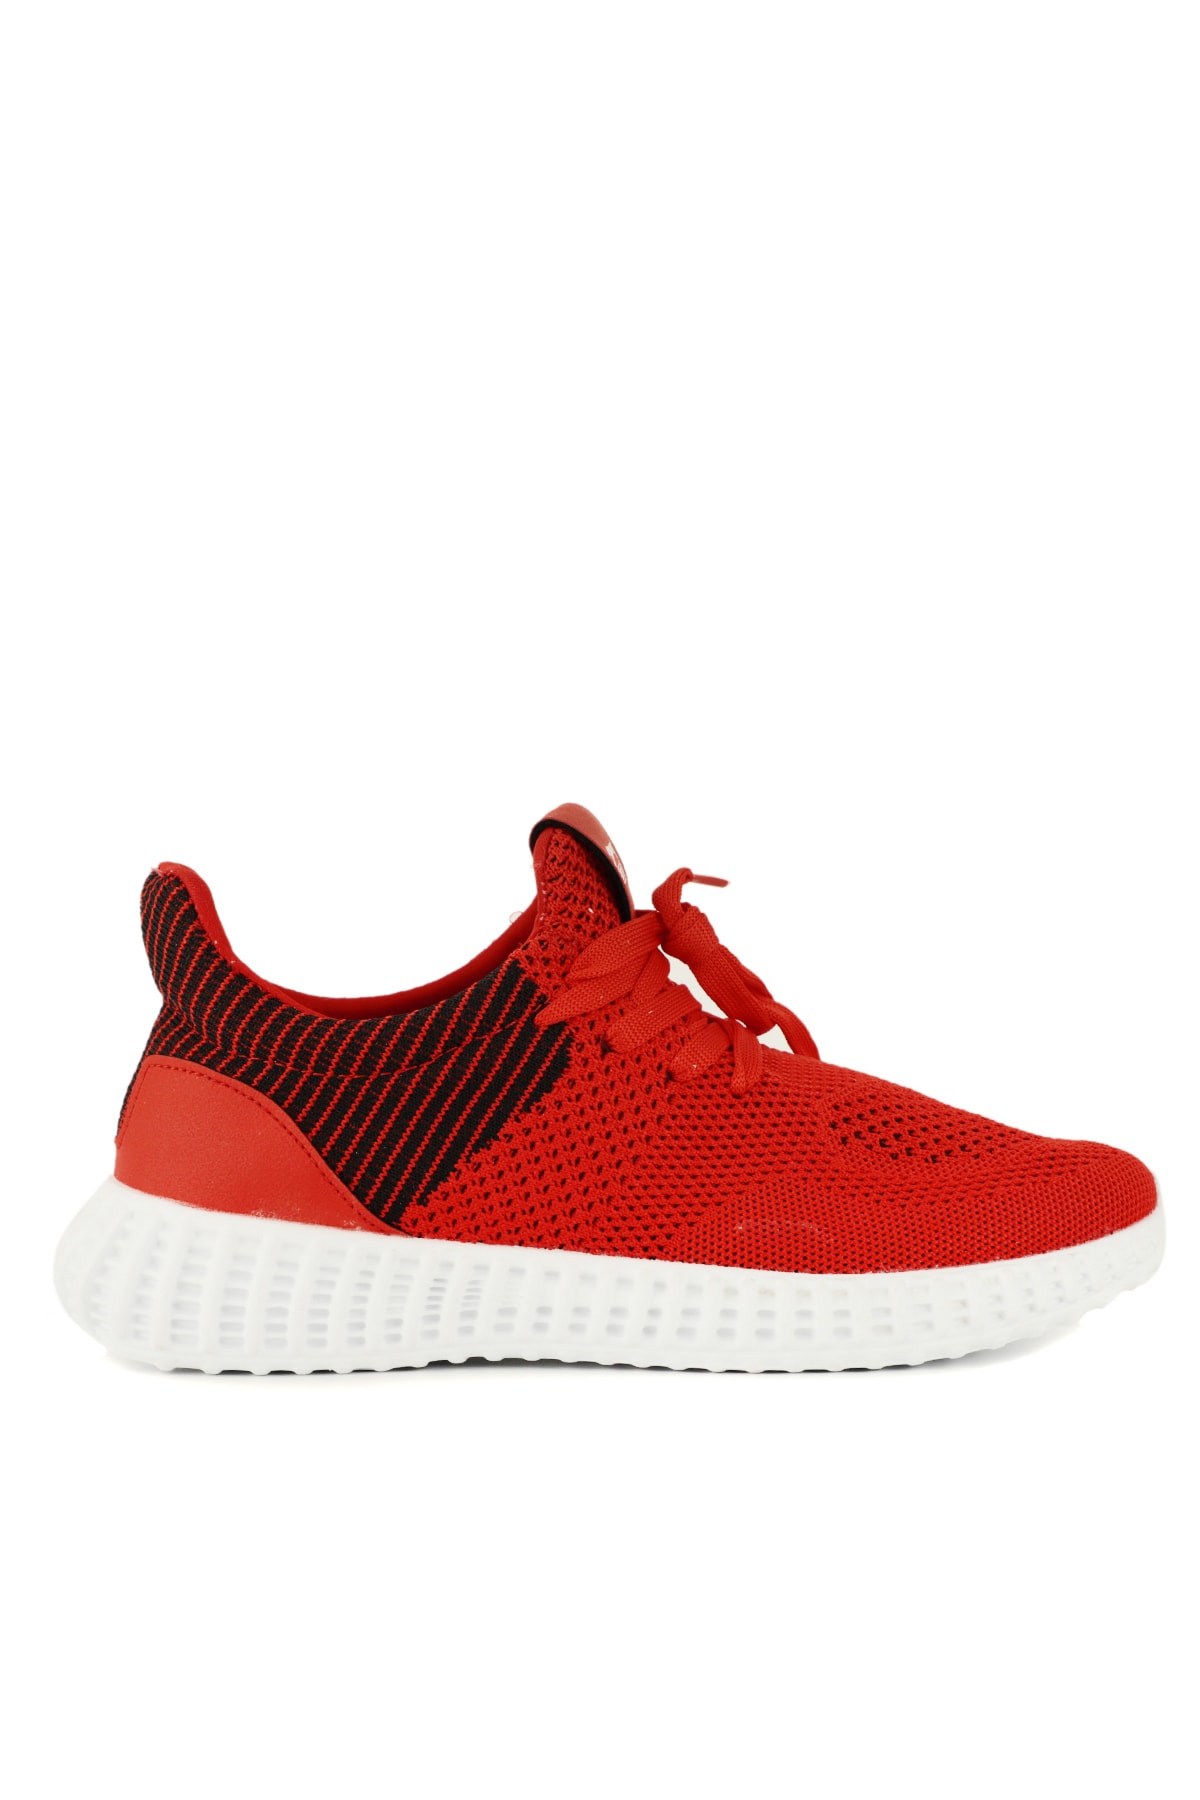 Slazenger Atomic Sneaker Shoes Red